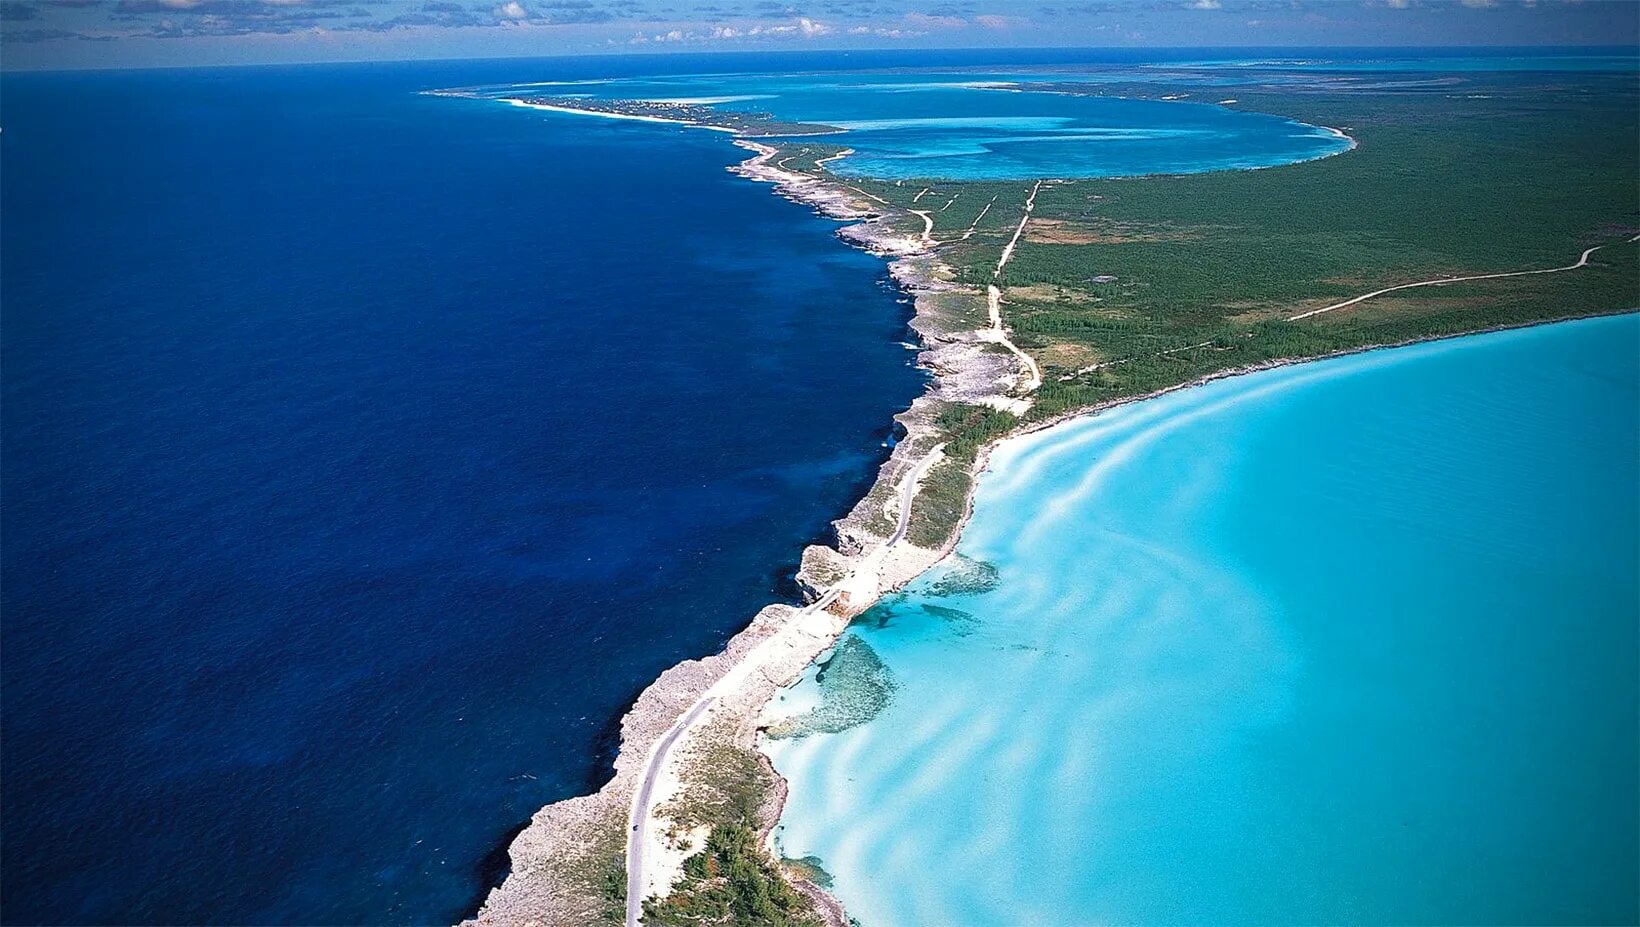 Атлантический океан вопрос. Эльютера Багамы. Элеутера (Багамские острова). Карибское море Атлантический океан. Остров Эльютера.